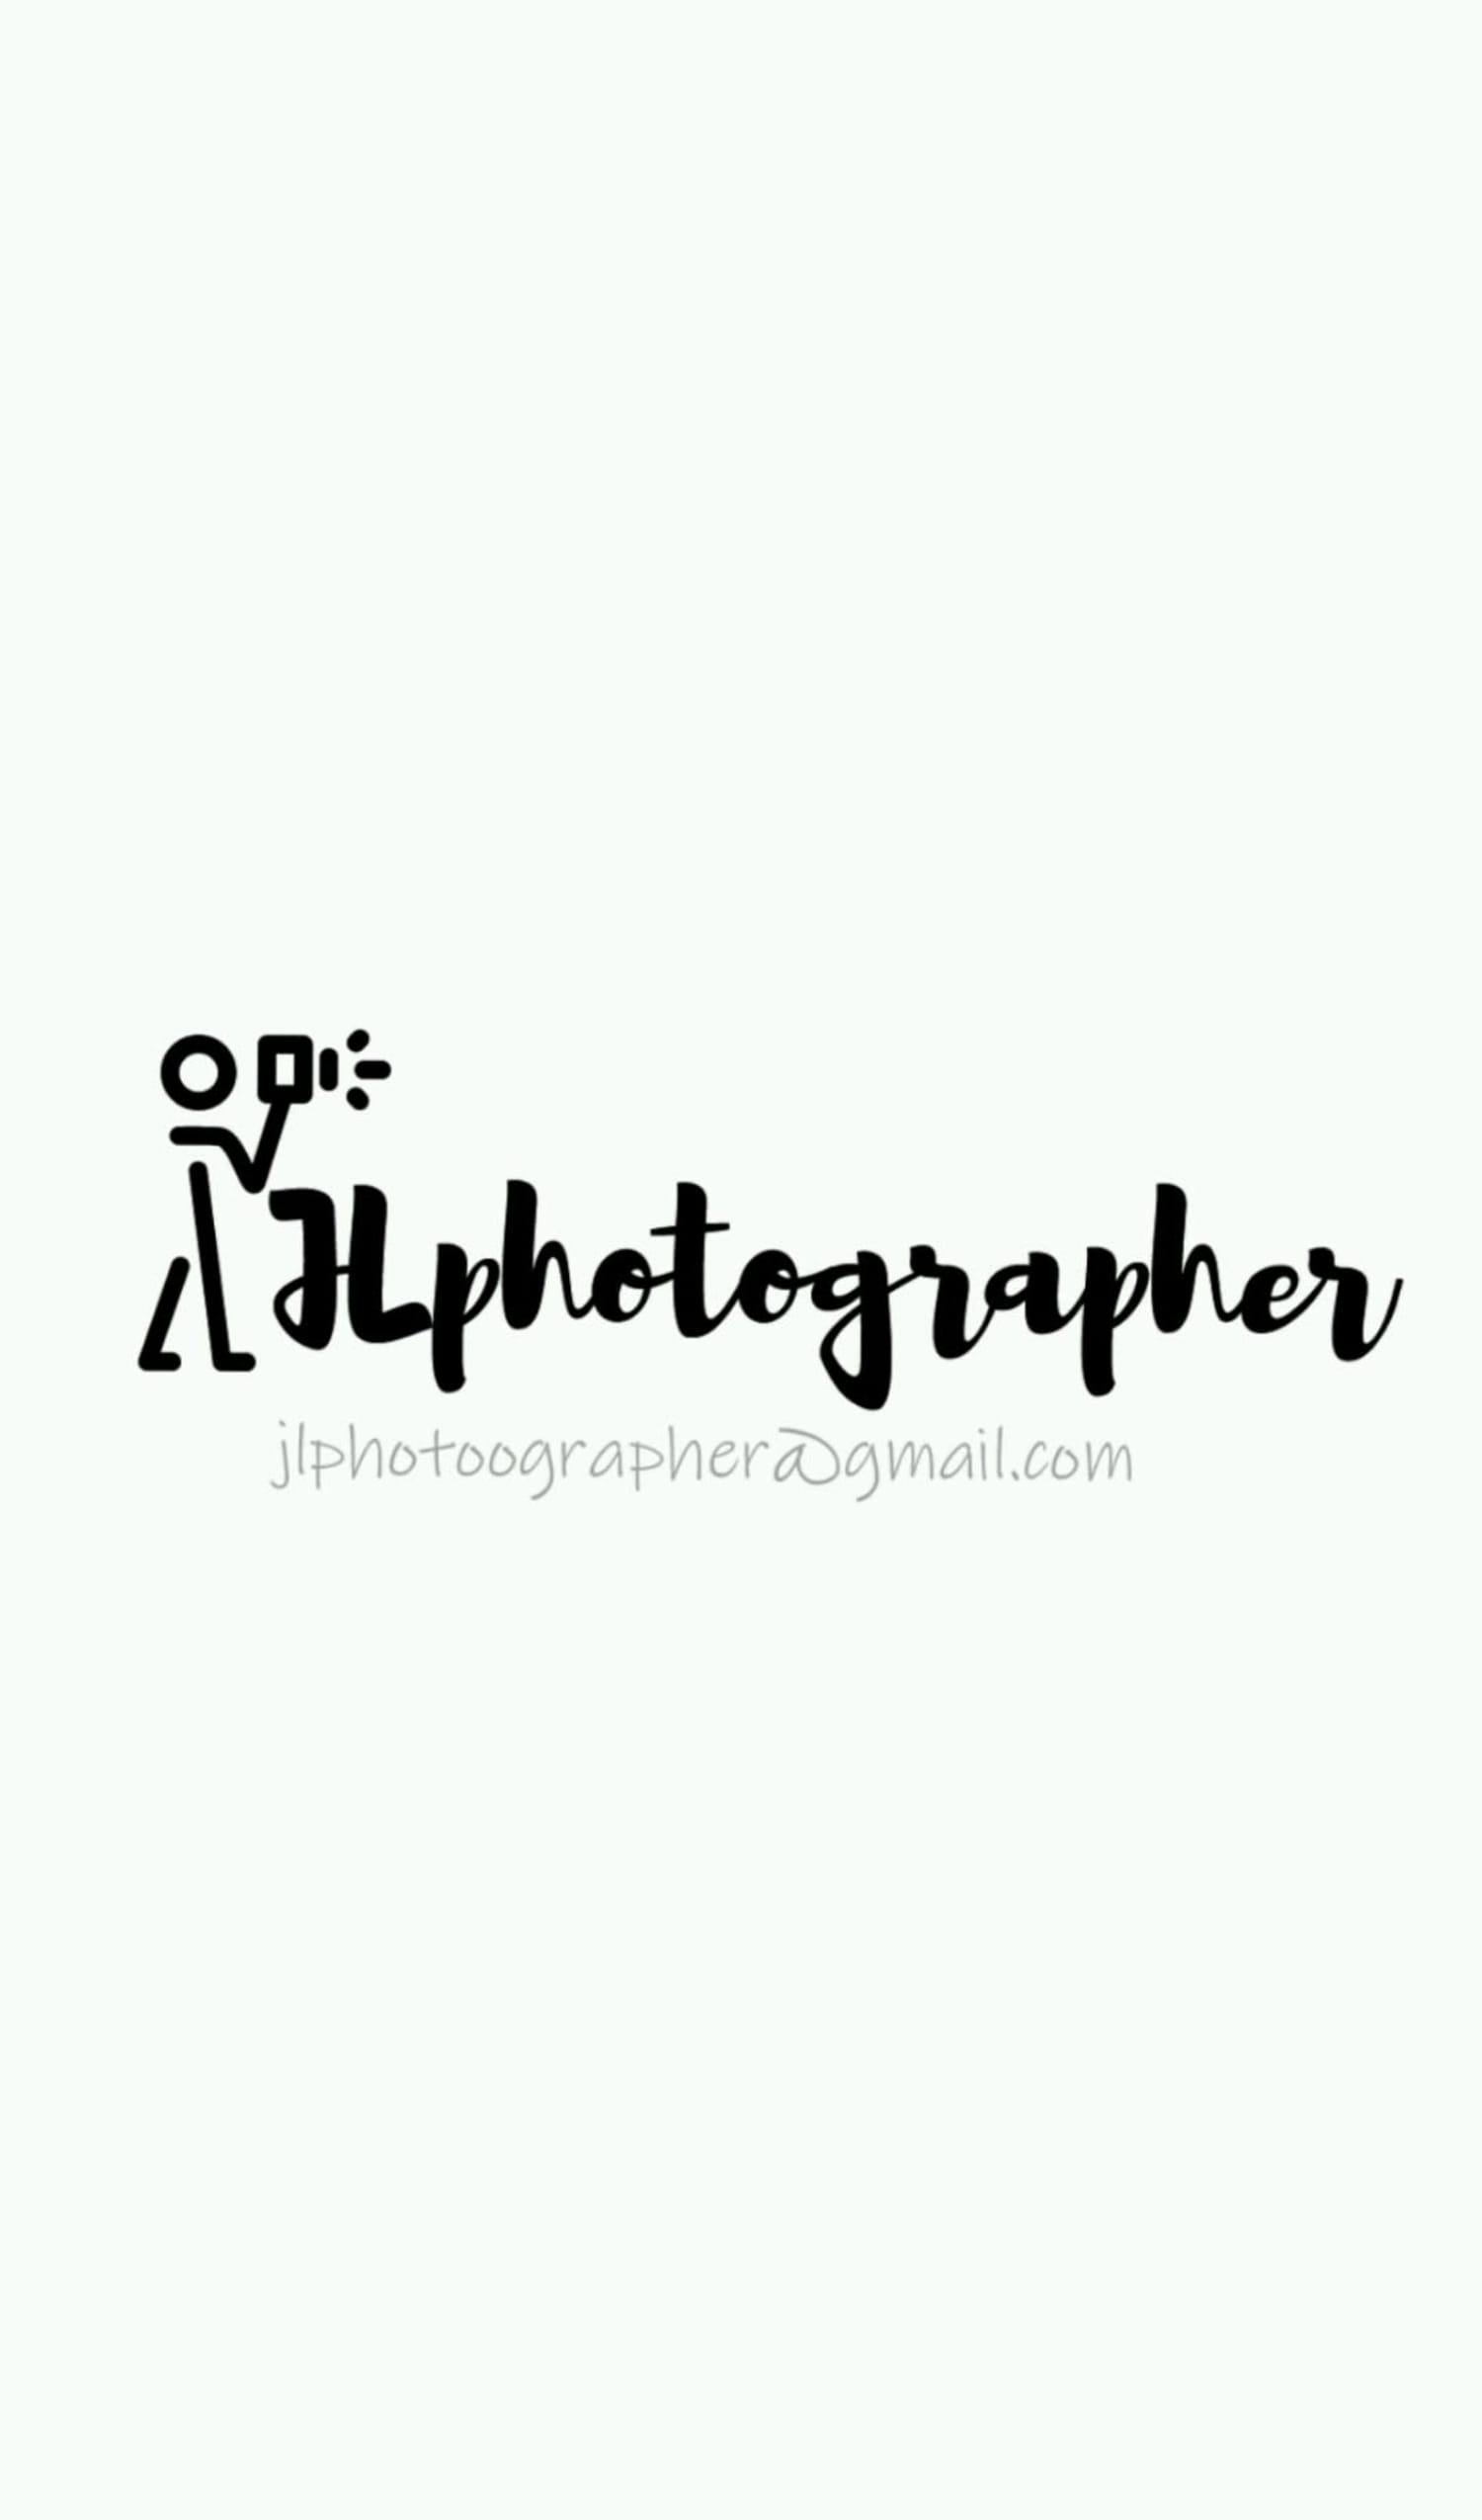 JL Photographer